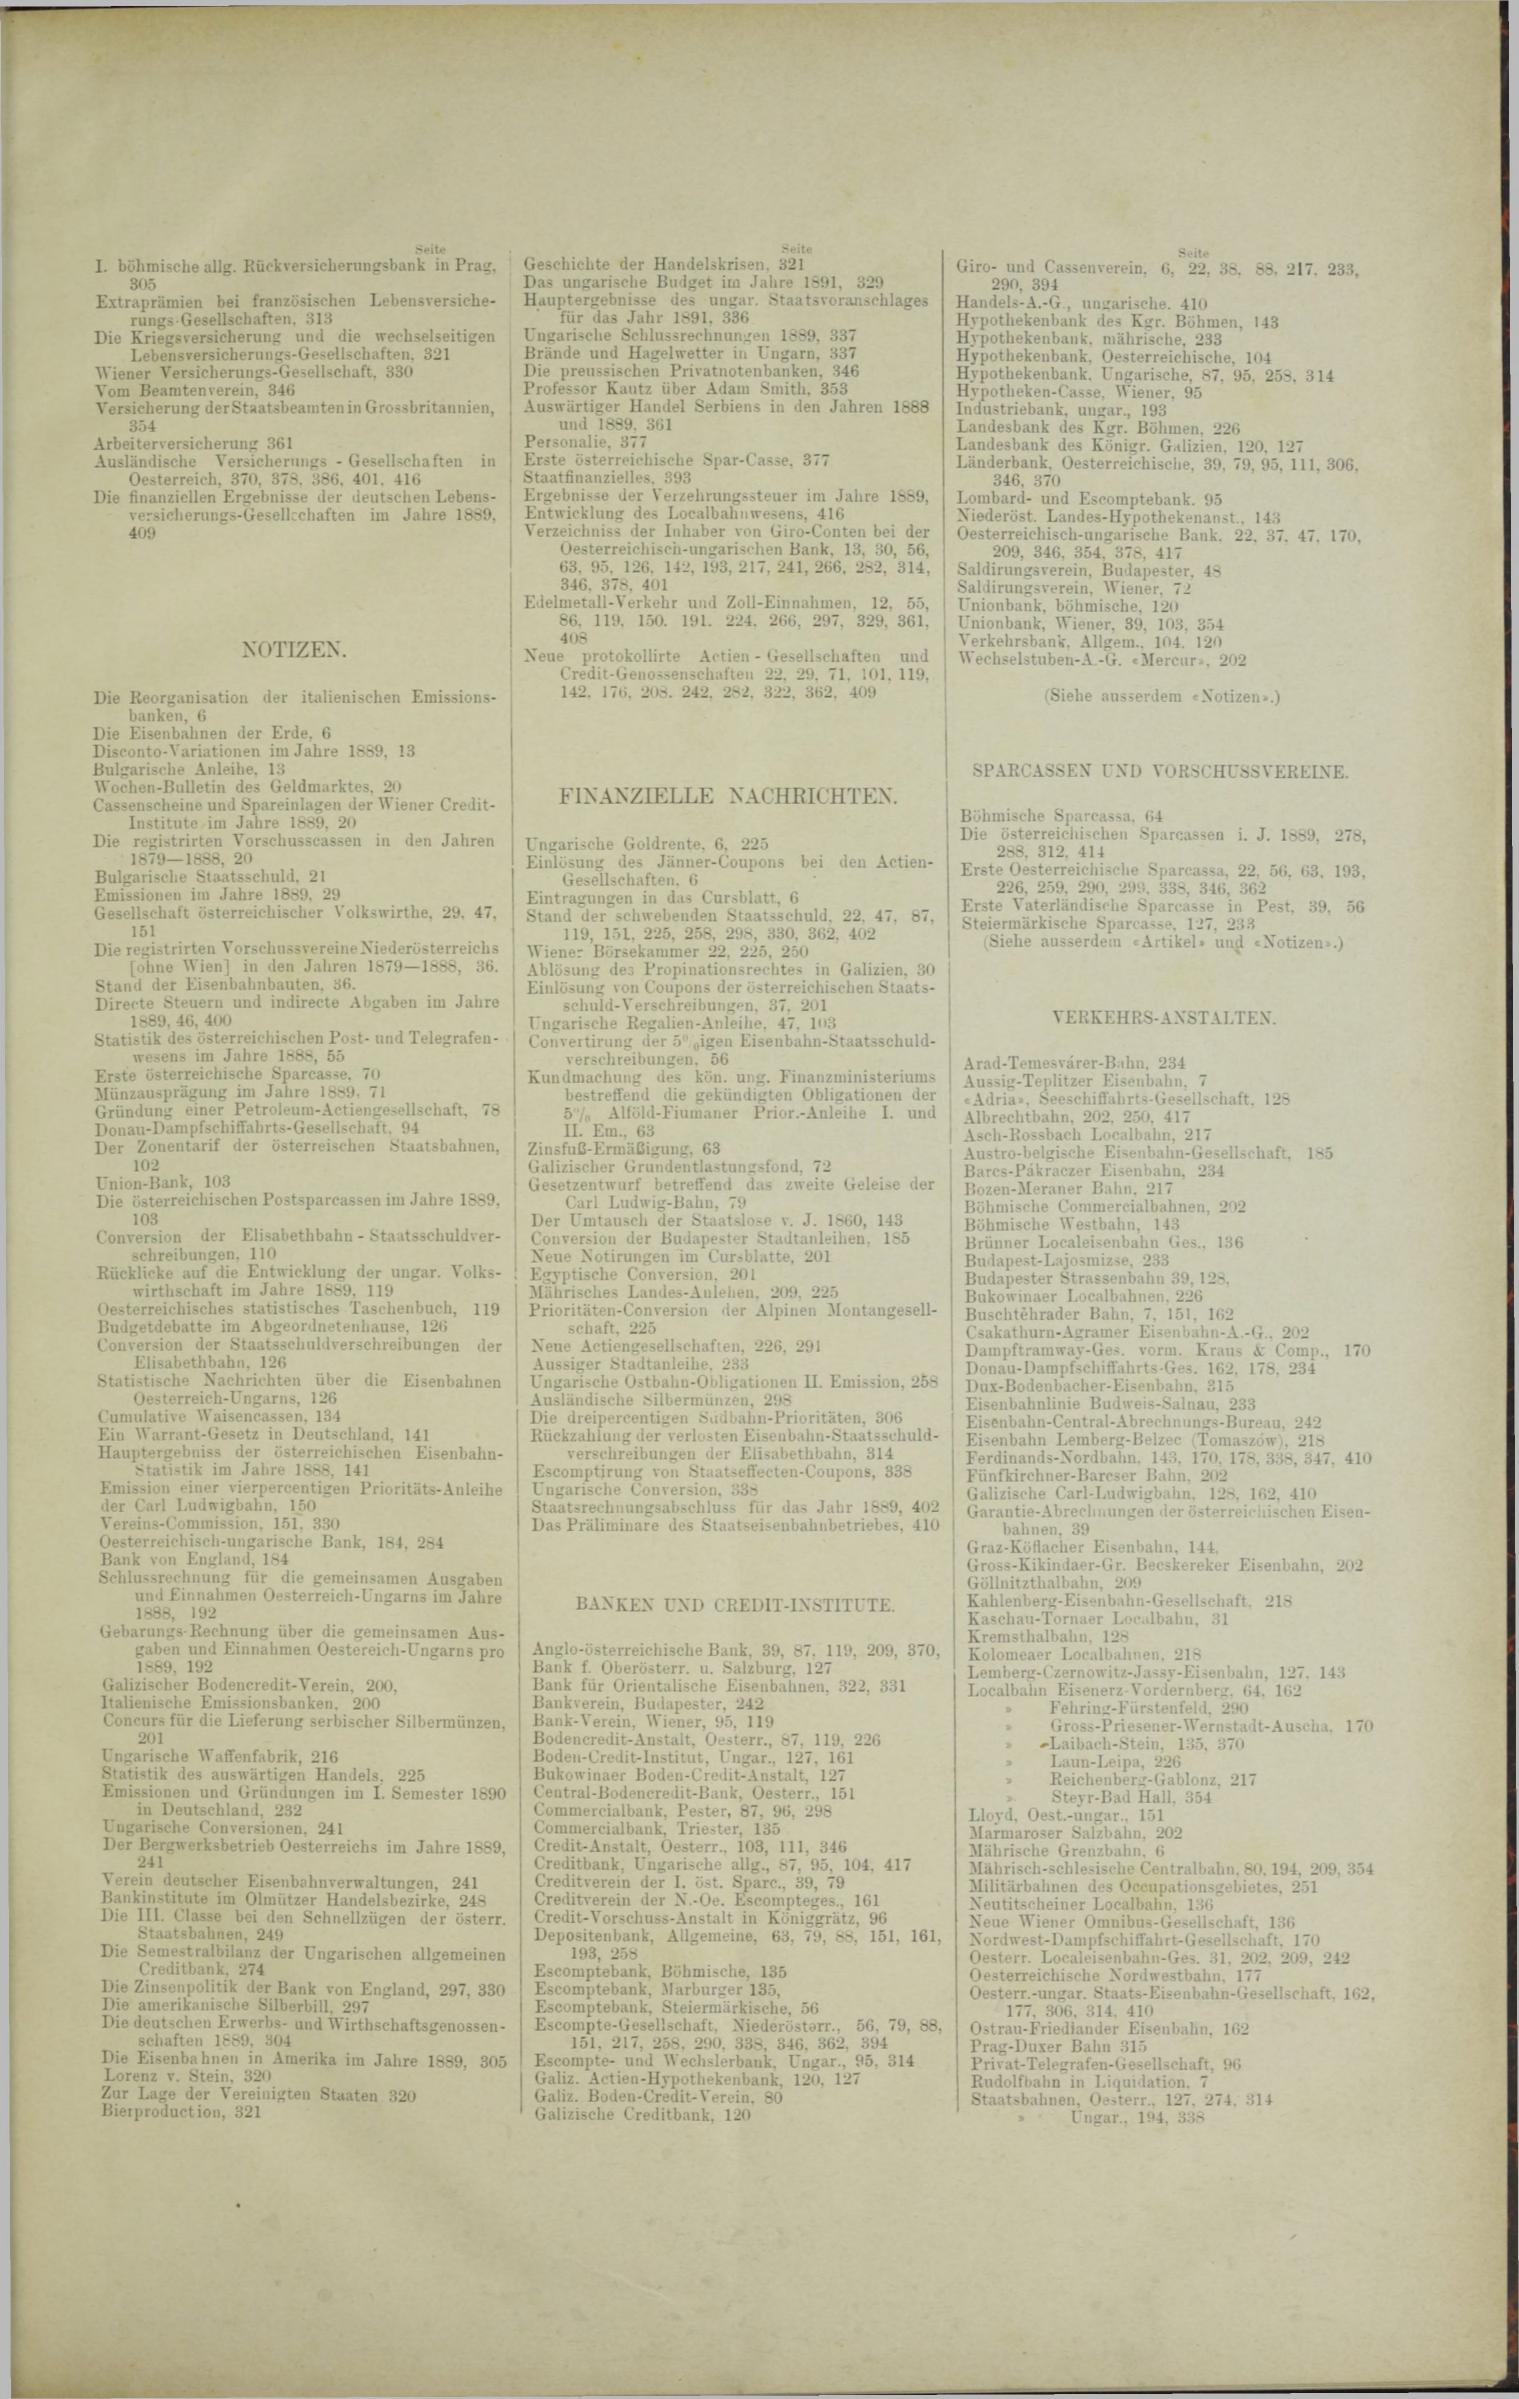 Der Tresor 17.07.1890 - Seite 11